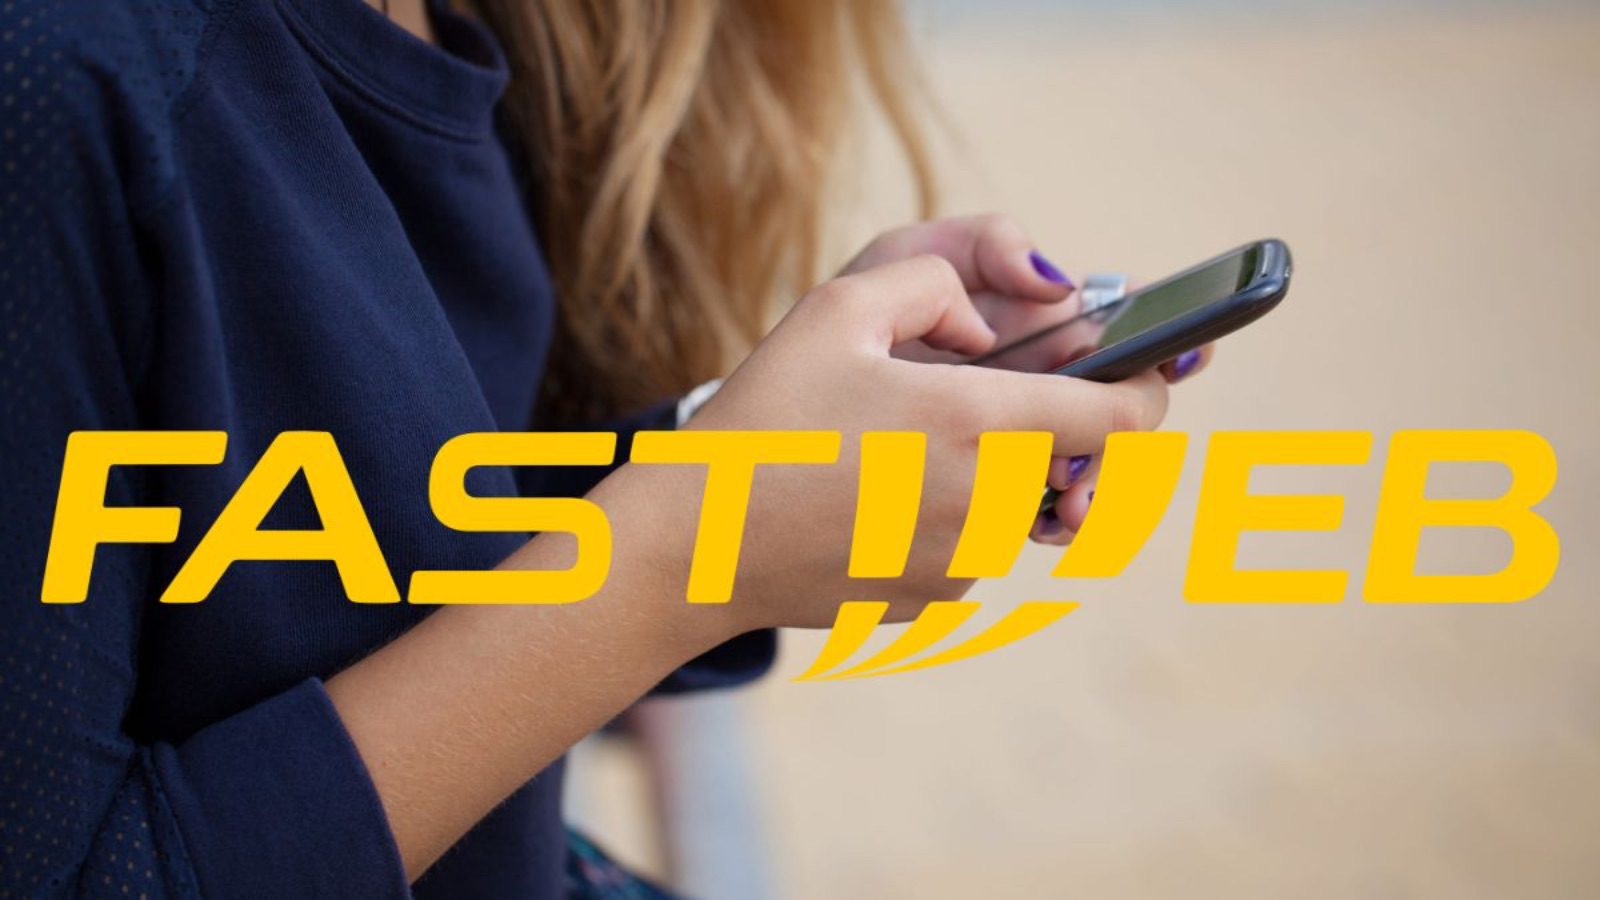 Fastweb costa 8 euro al mese, ci sono 200GB e il servizio esclusivo gratis